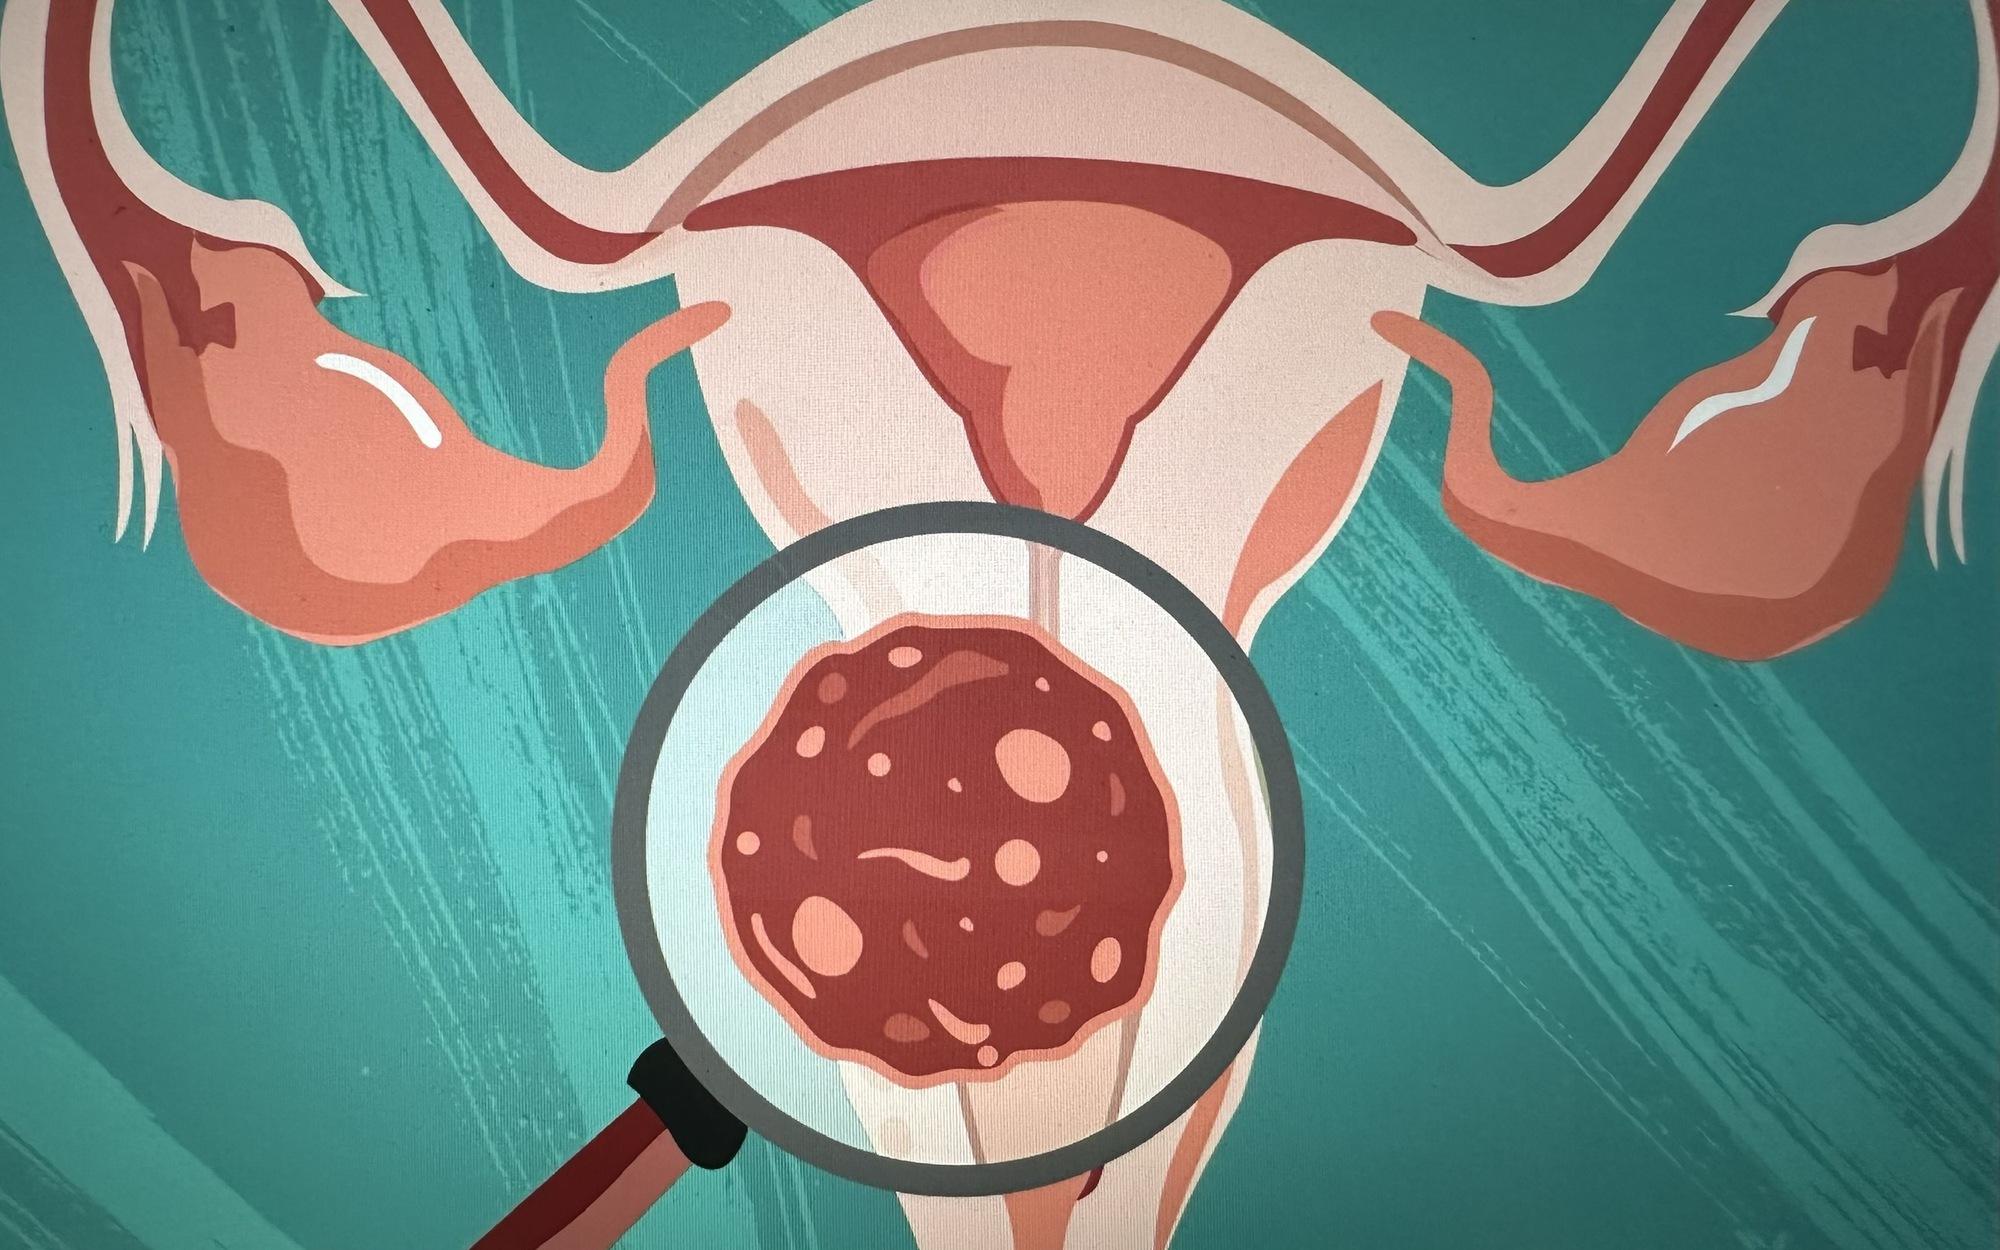 Ung thư cổ tử cung có chữa được không?